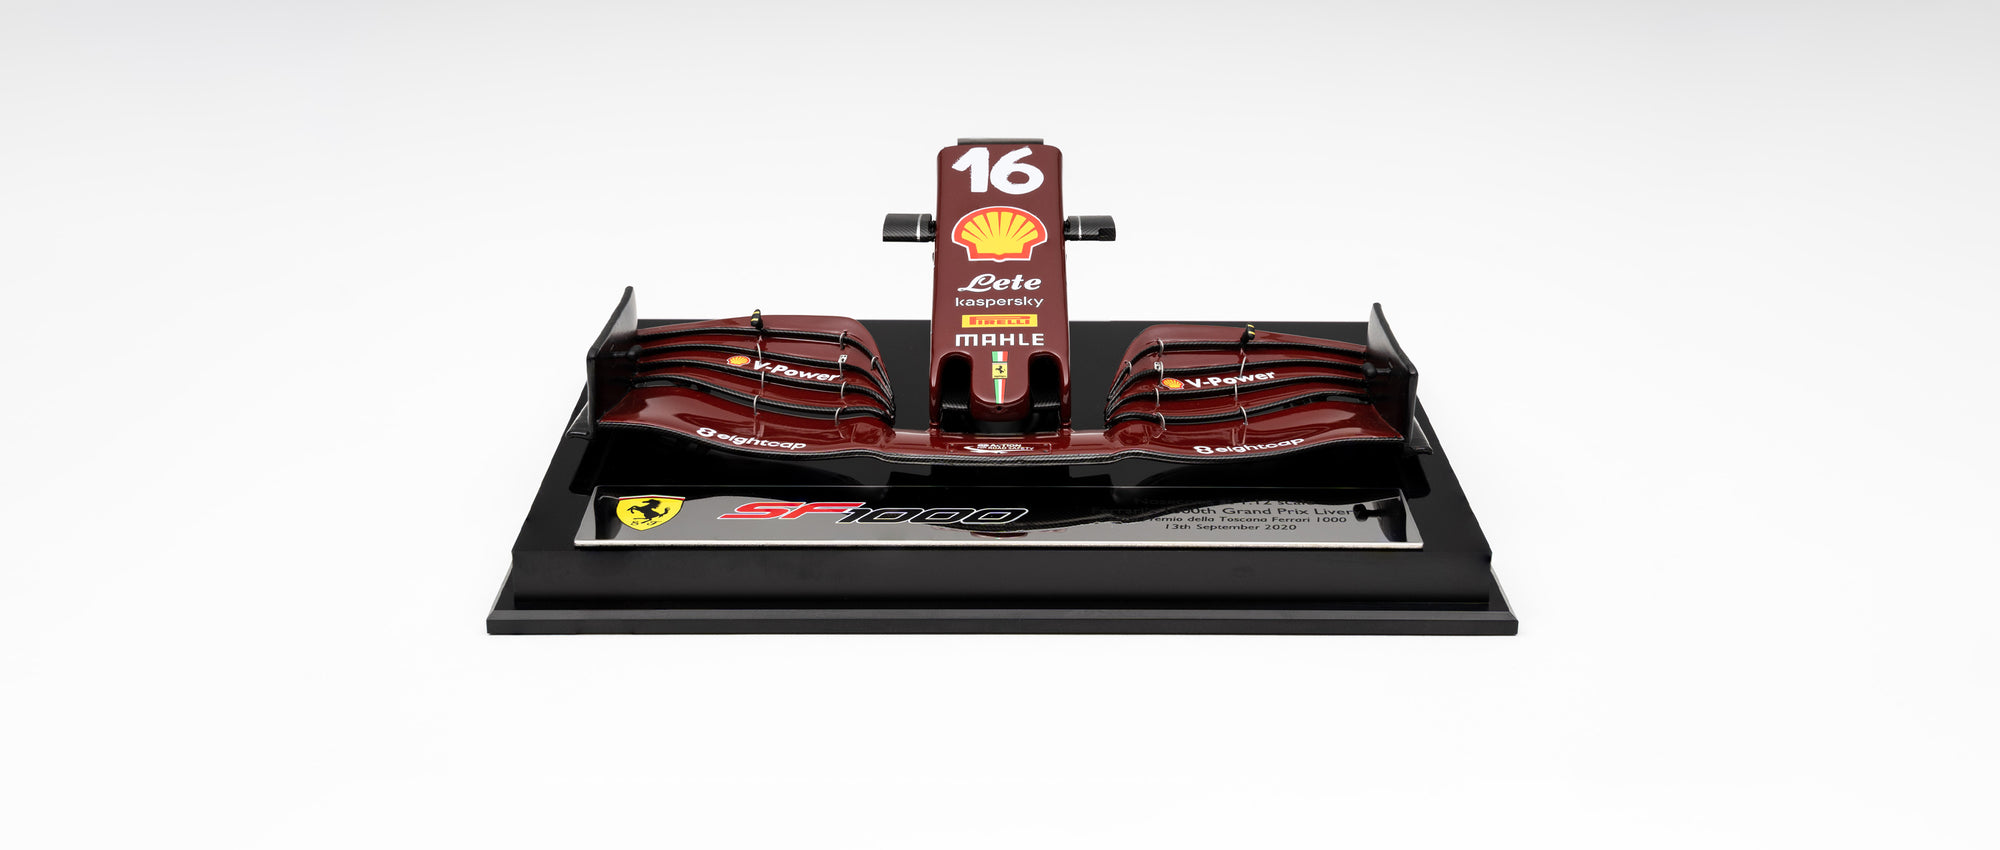 法拉利SF1000微型前鼻翼-第1000届格兰披治大赛车-2020年托斯卡纳大奖赛